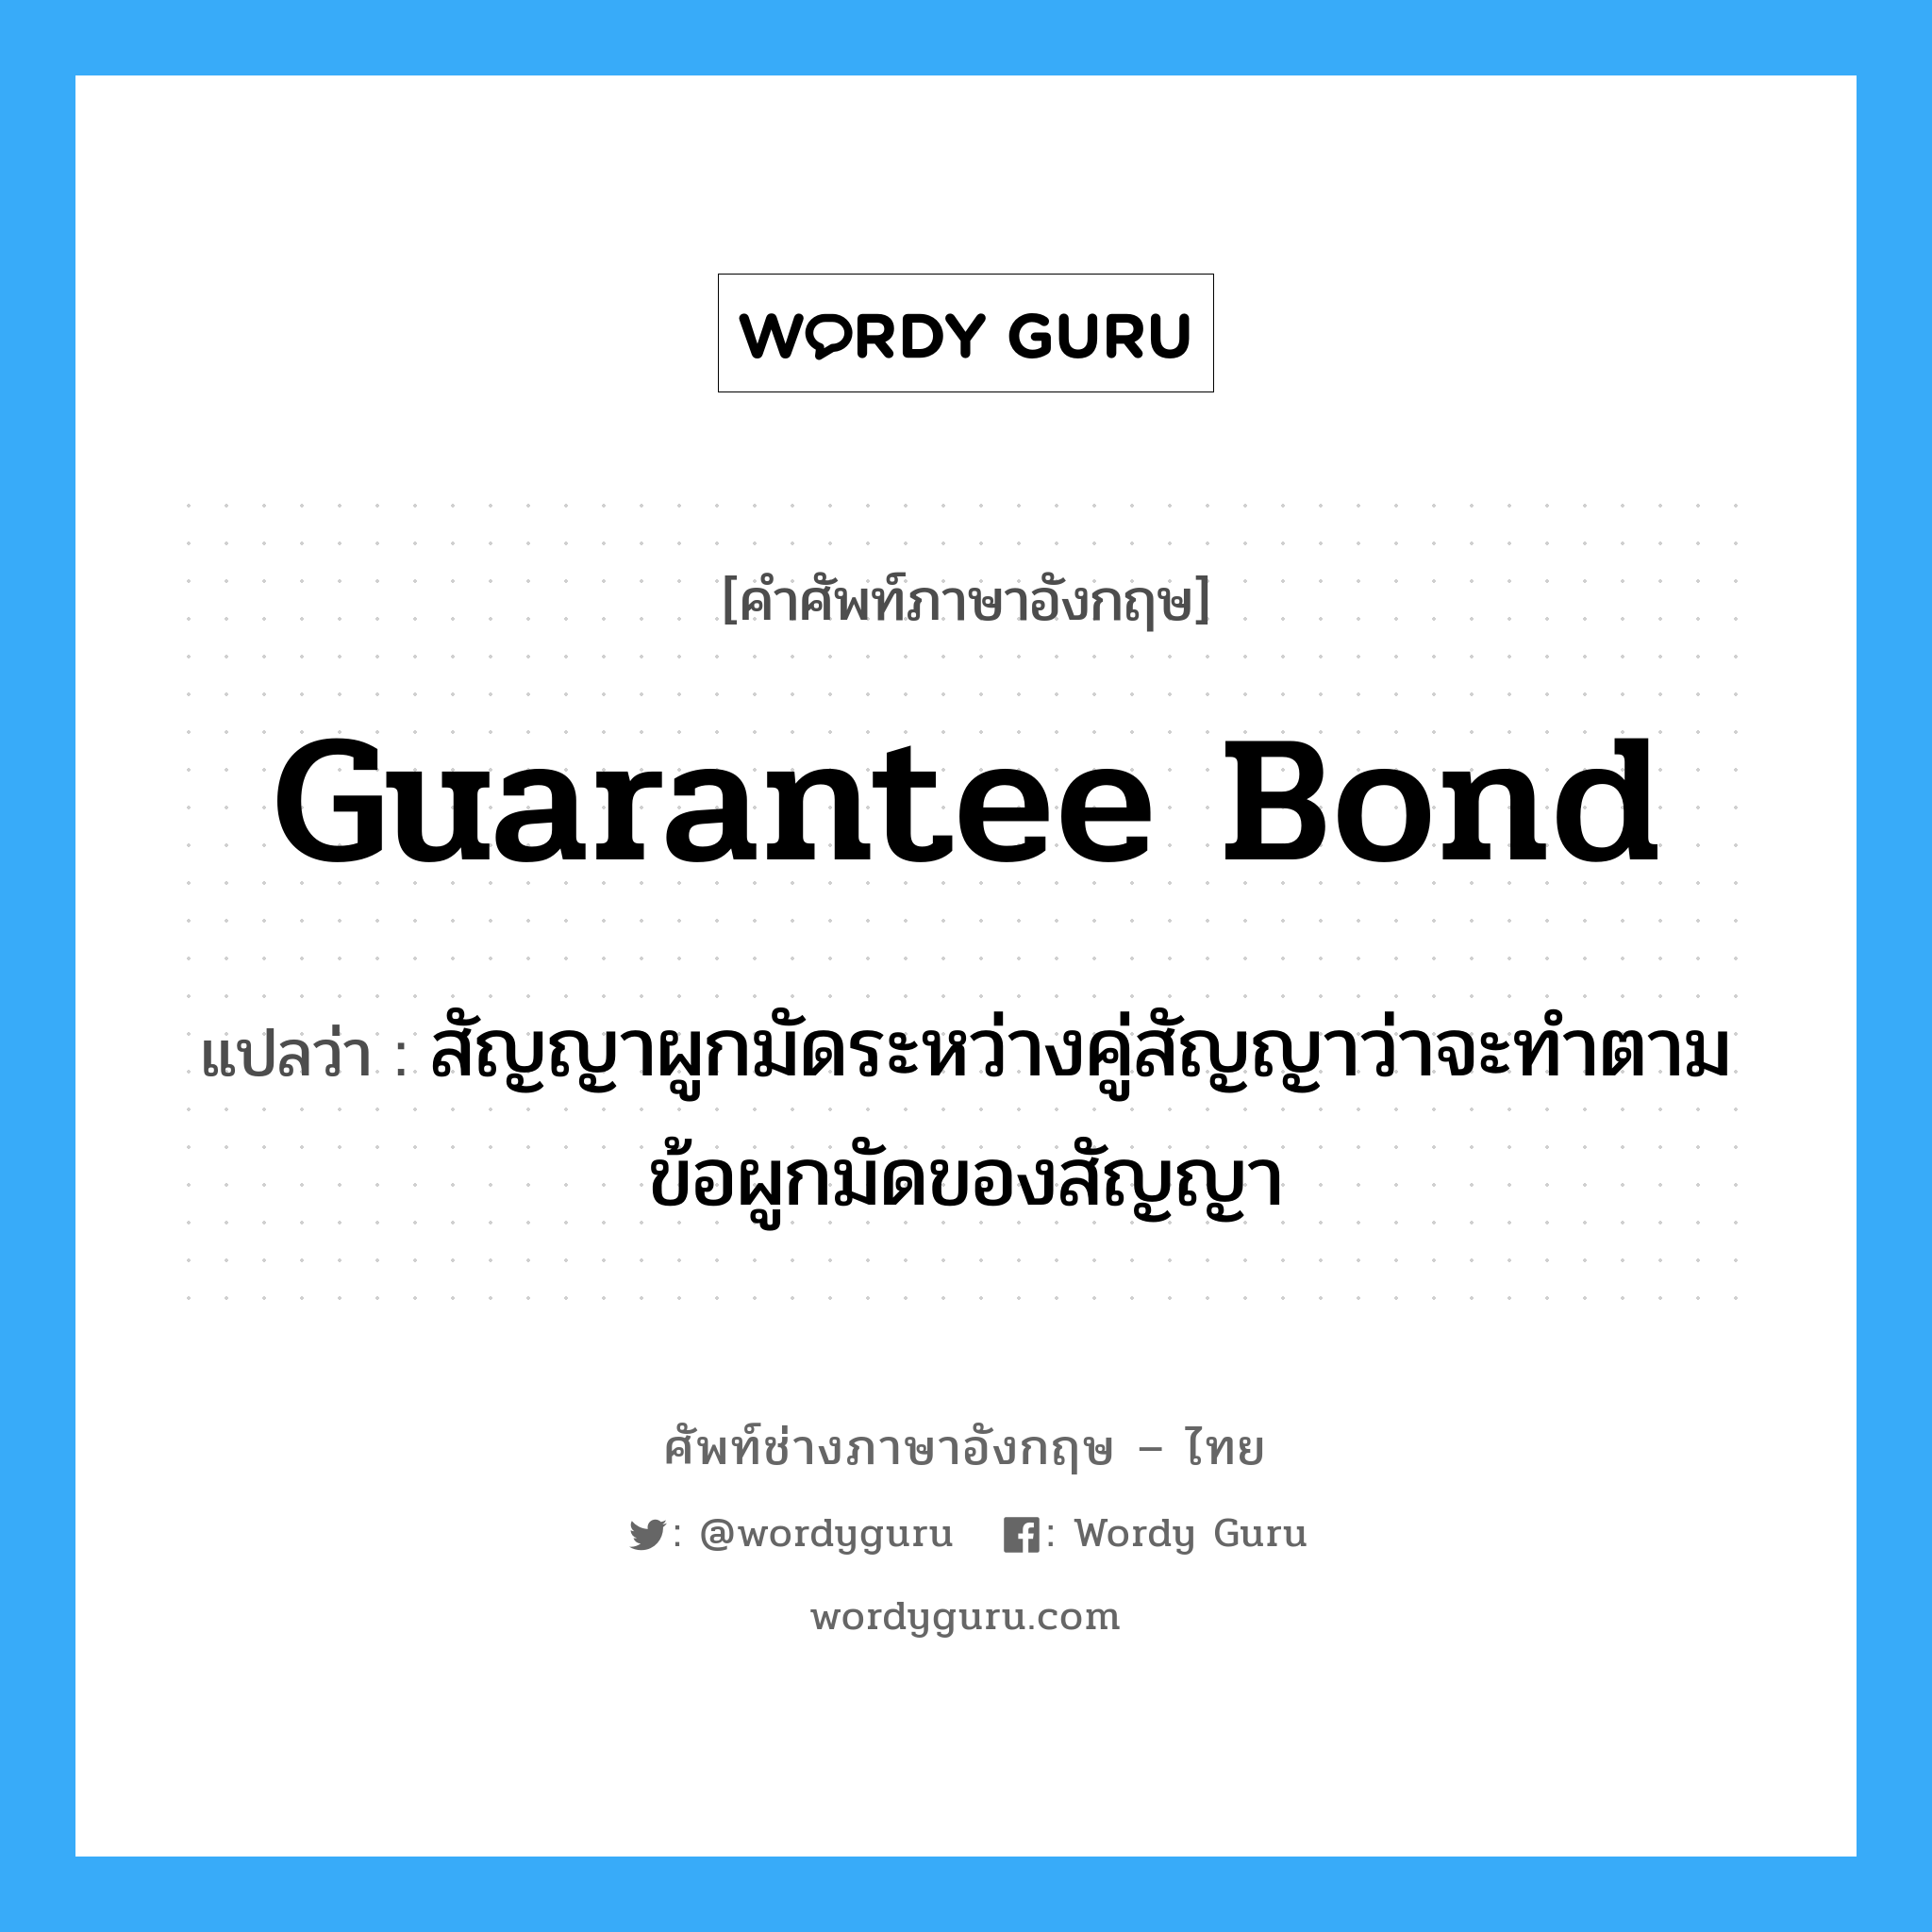 Guarantee Bond แปลว่า?, คำศัพท์ช่างภาษาอังกฤษ - ไทย Guarantee Bond คำศัพท์ภาษาอังกฤษ Guarantee Bond แปลว่า สัญญาผูกมัดระหว่างคู่สัญญาว่าจะทำตามข้อผูกมัดของสัญญา